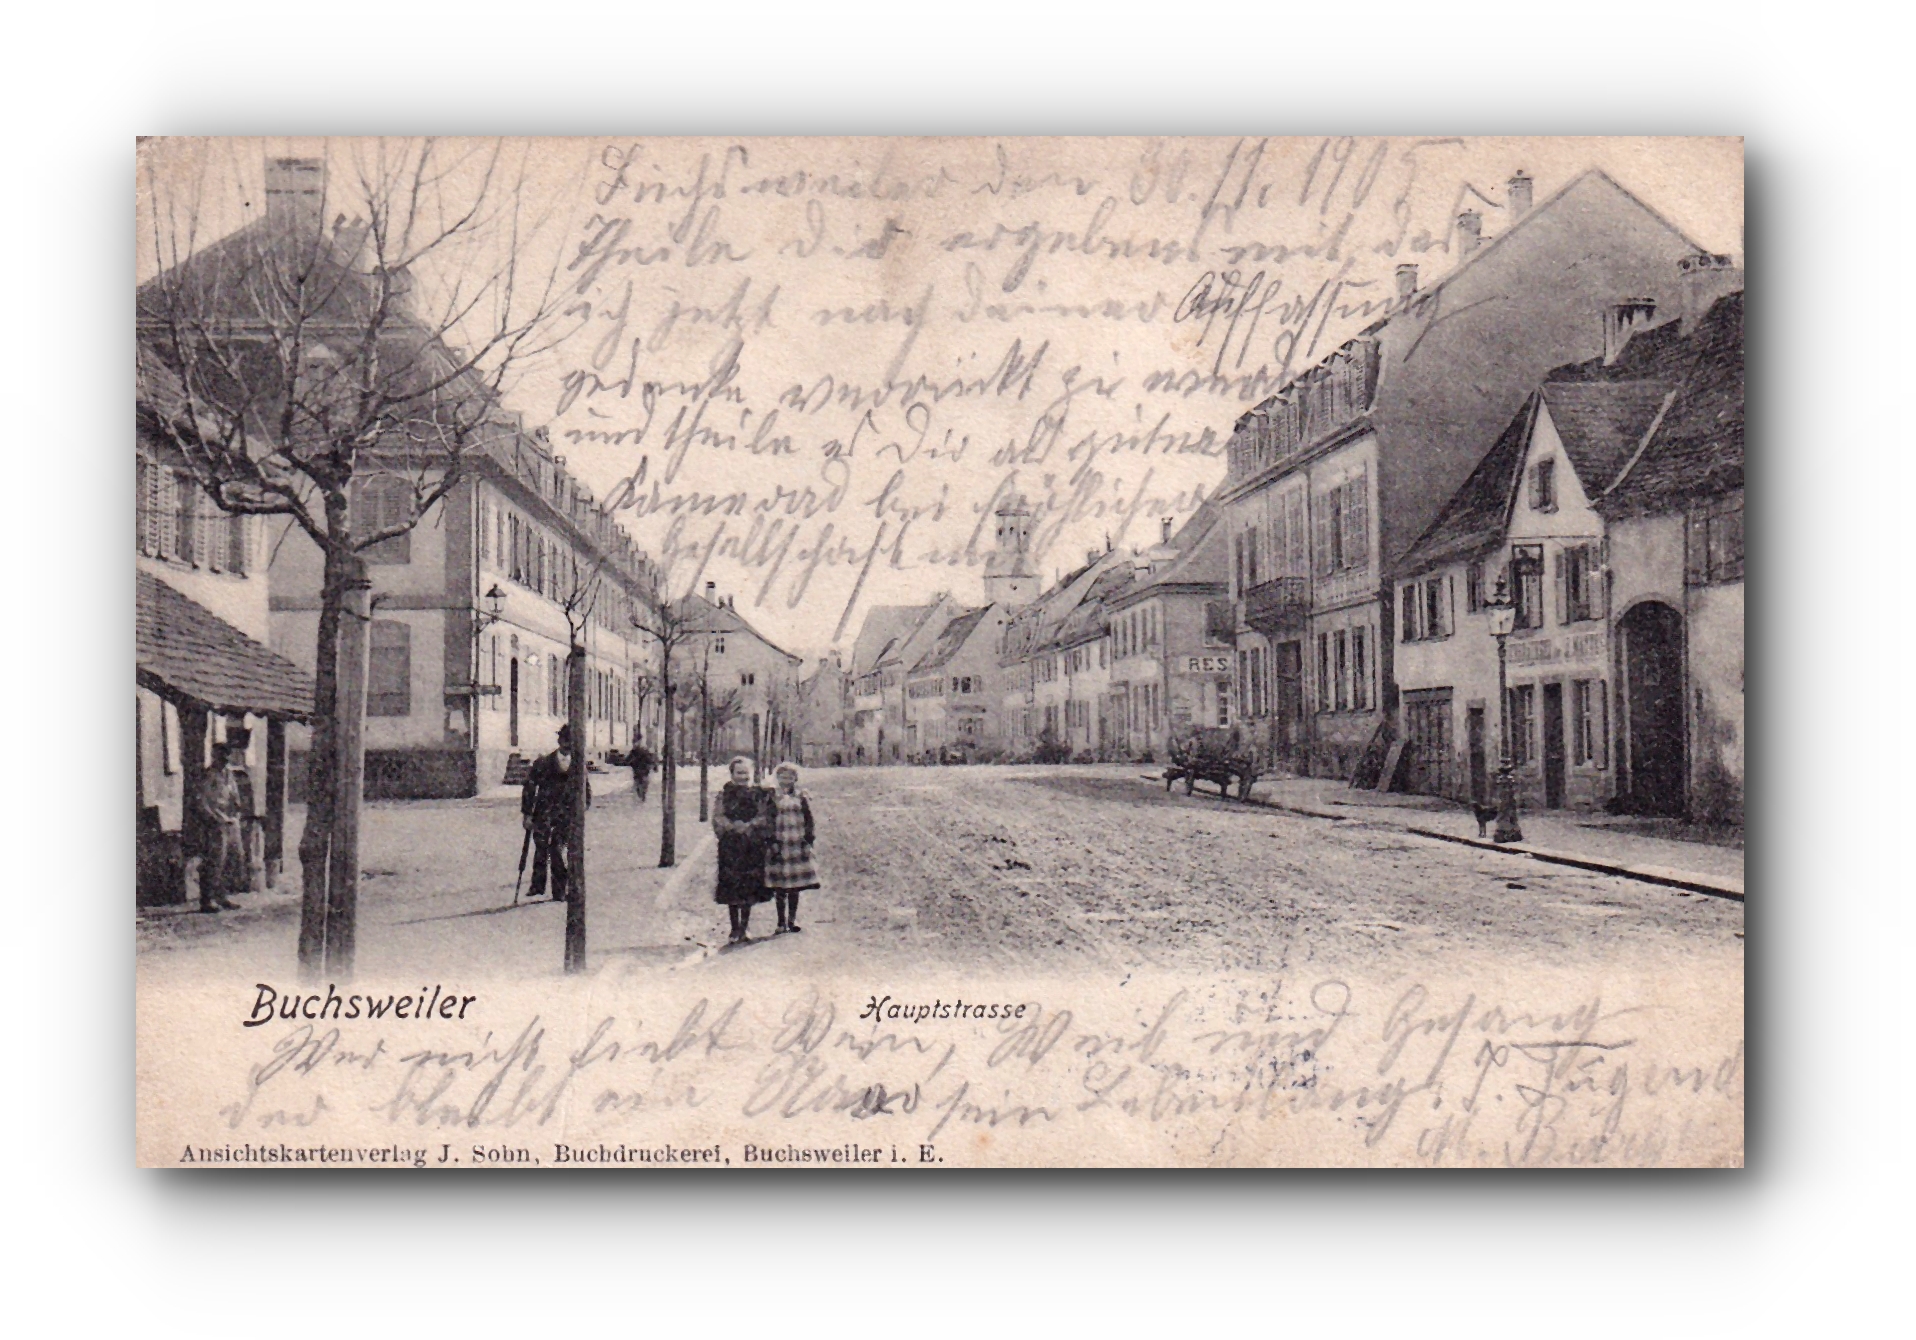 - Hauptstrasse - Buchsweiler - BOUXWILLER - 01.12.1905 -